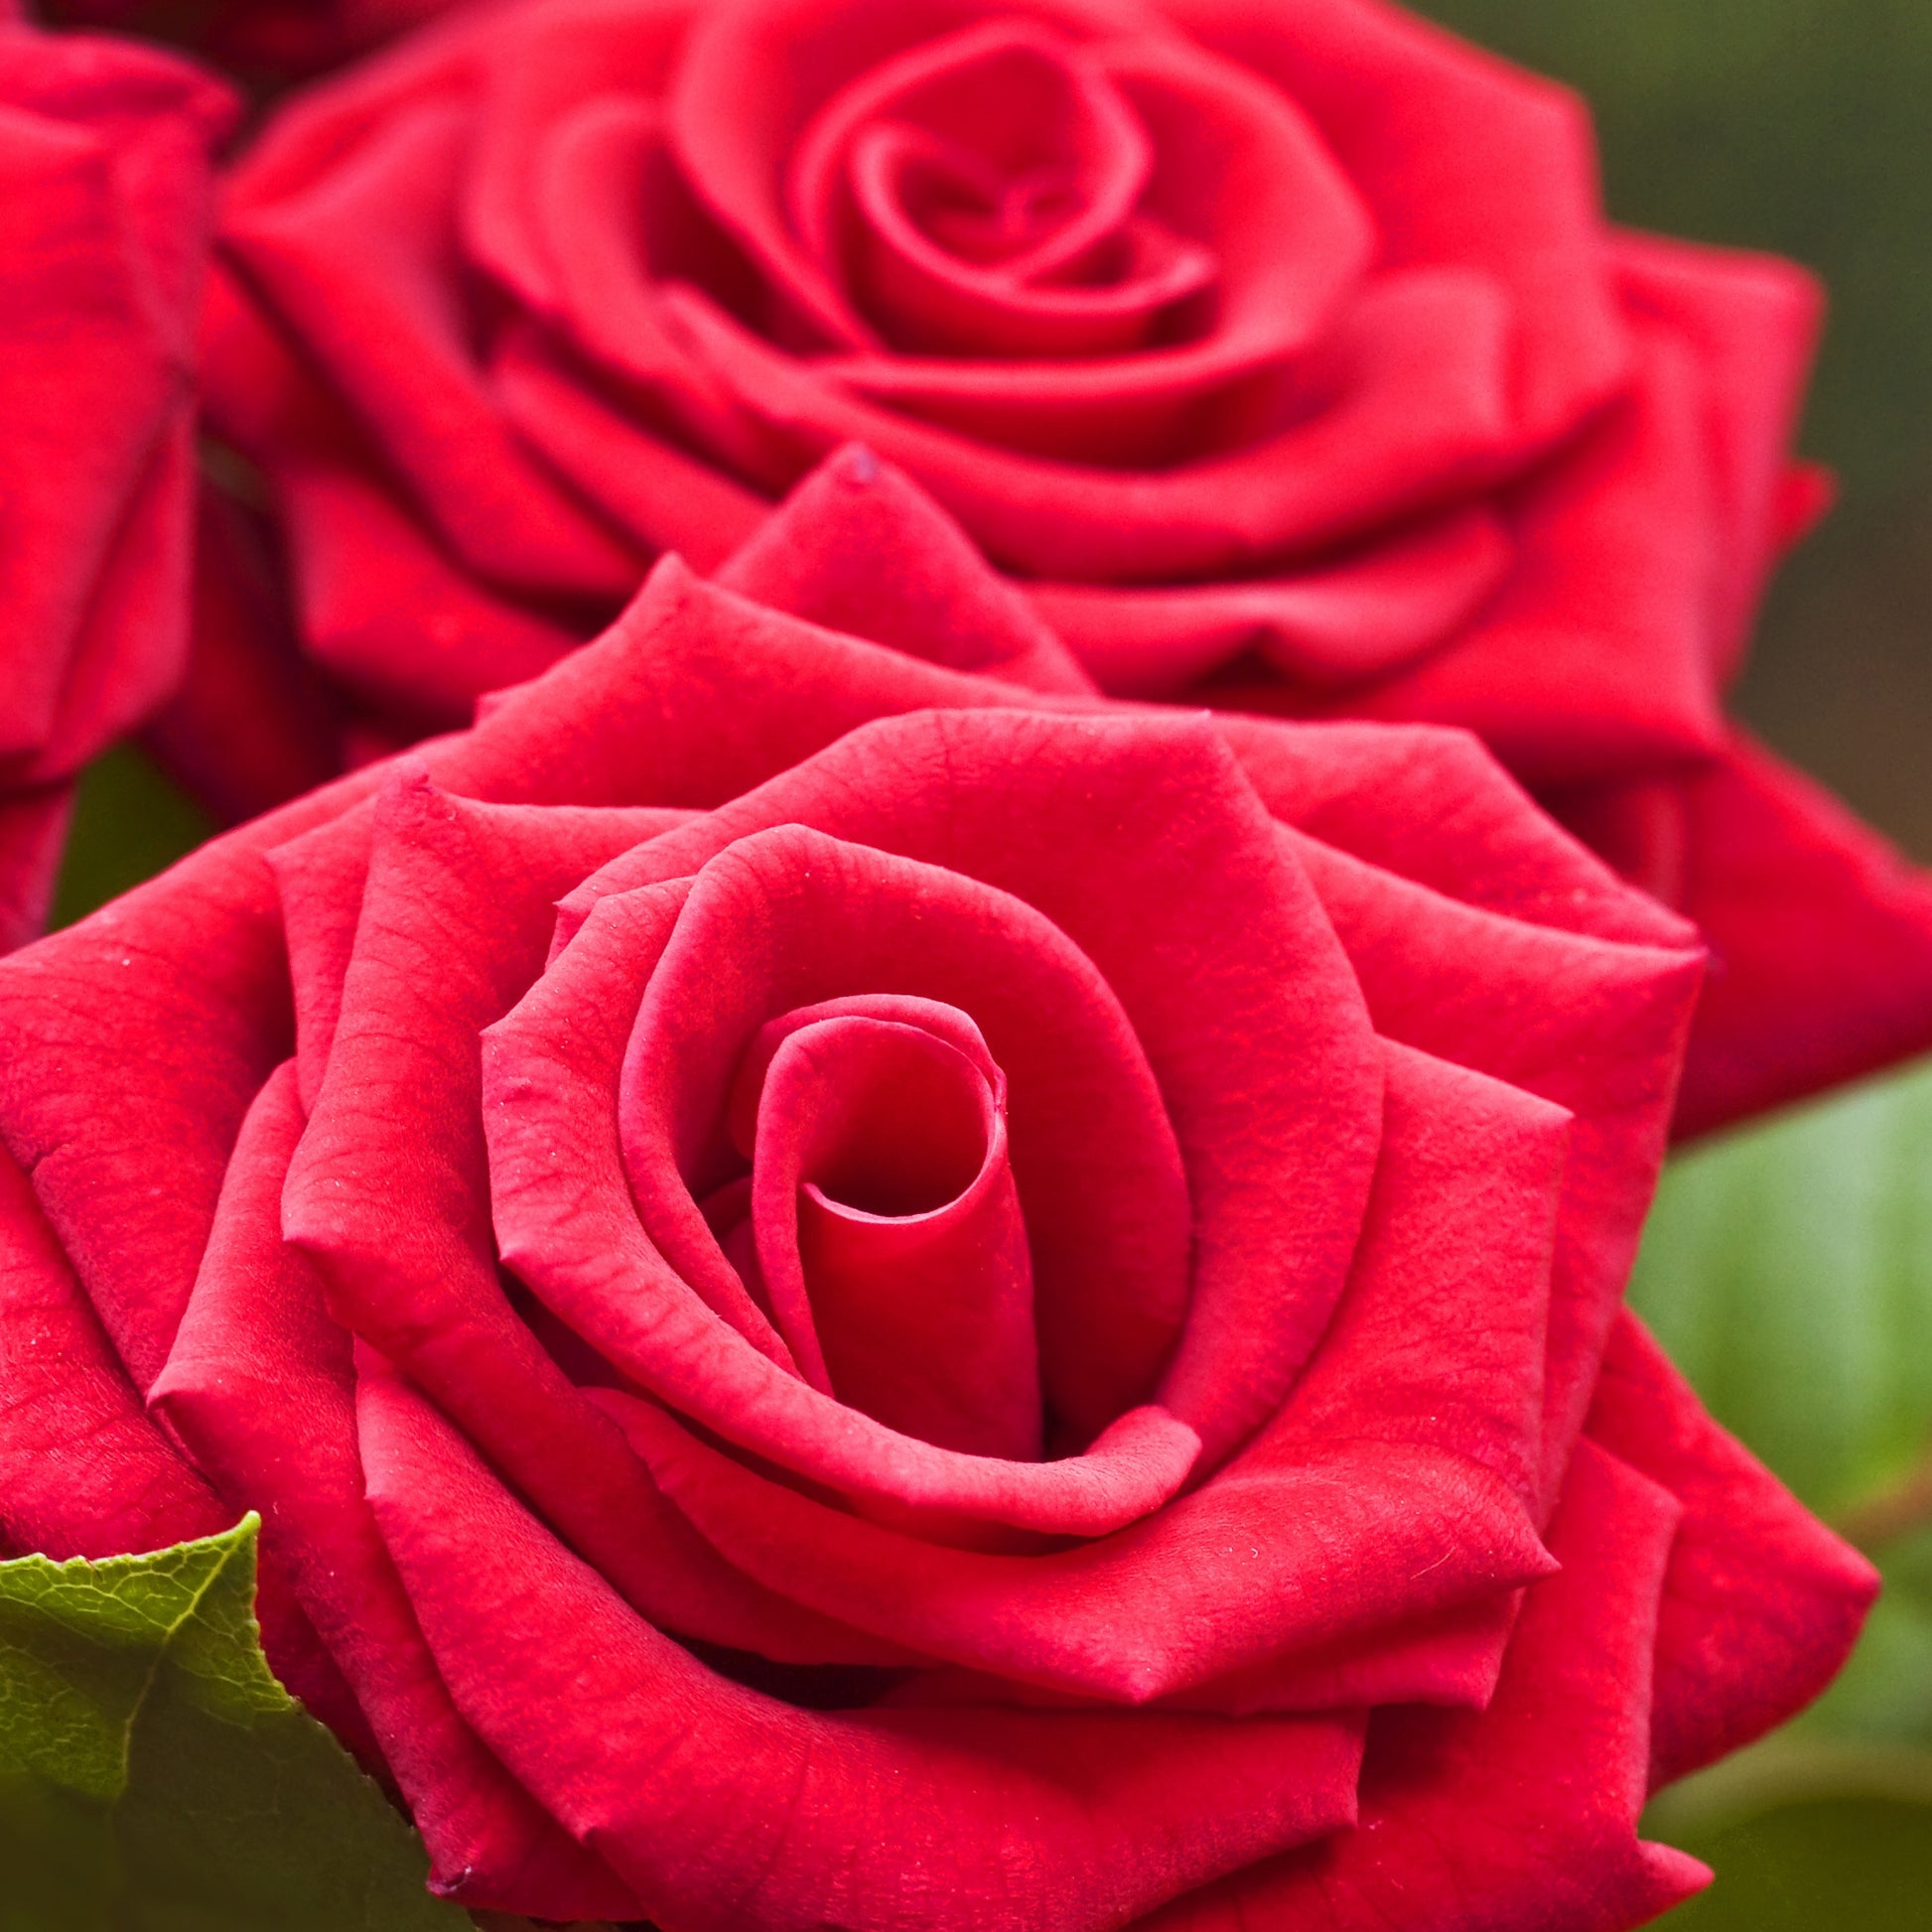 Leuchtend rote Strauchrose - Rosa